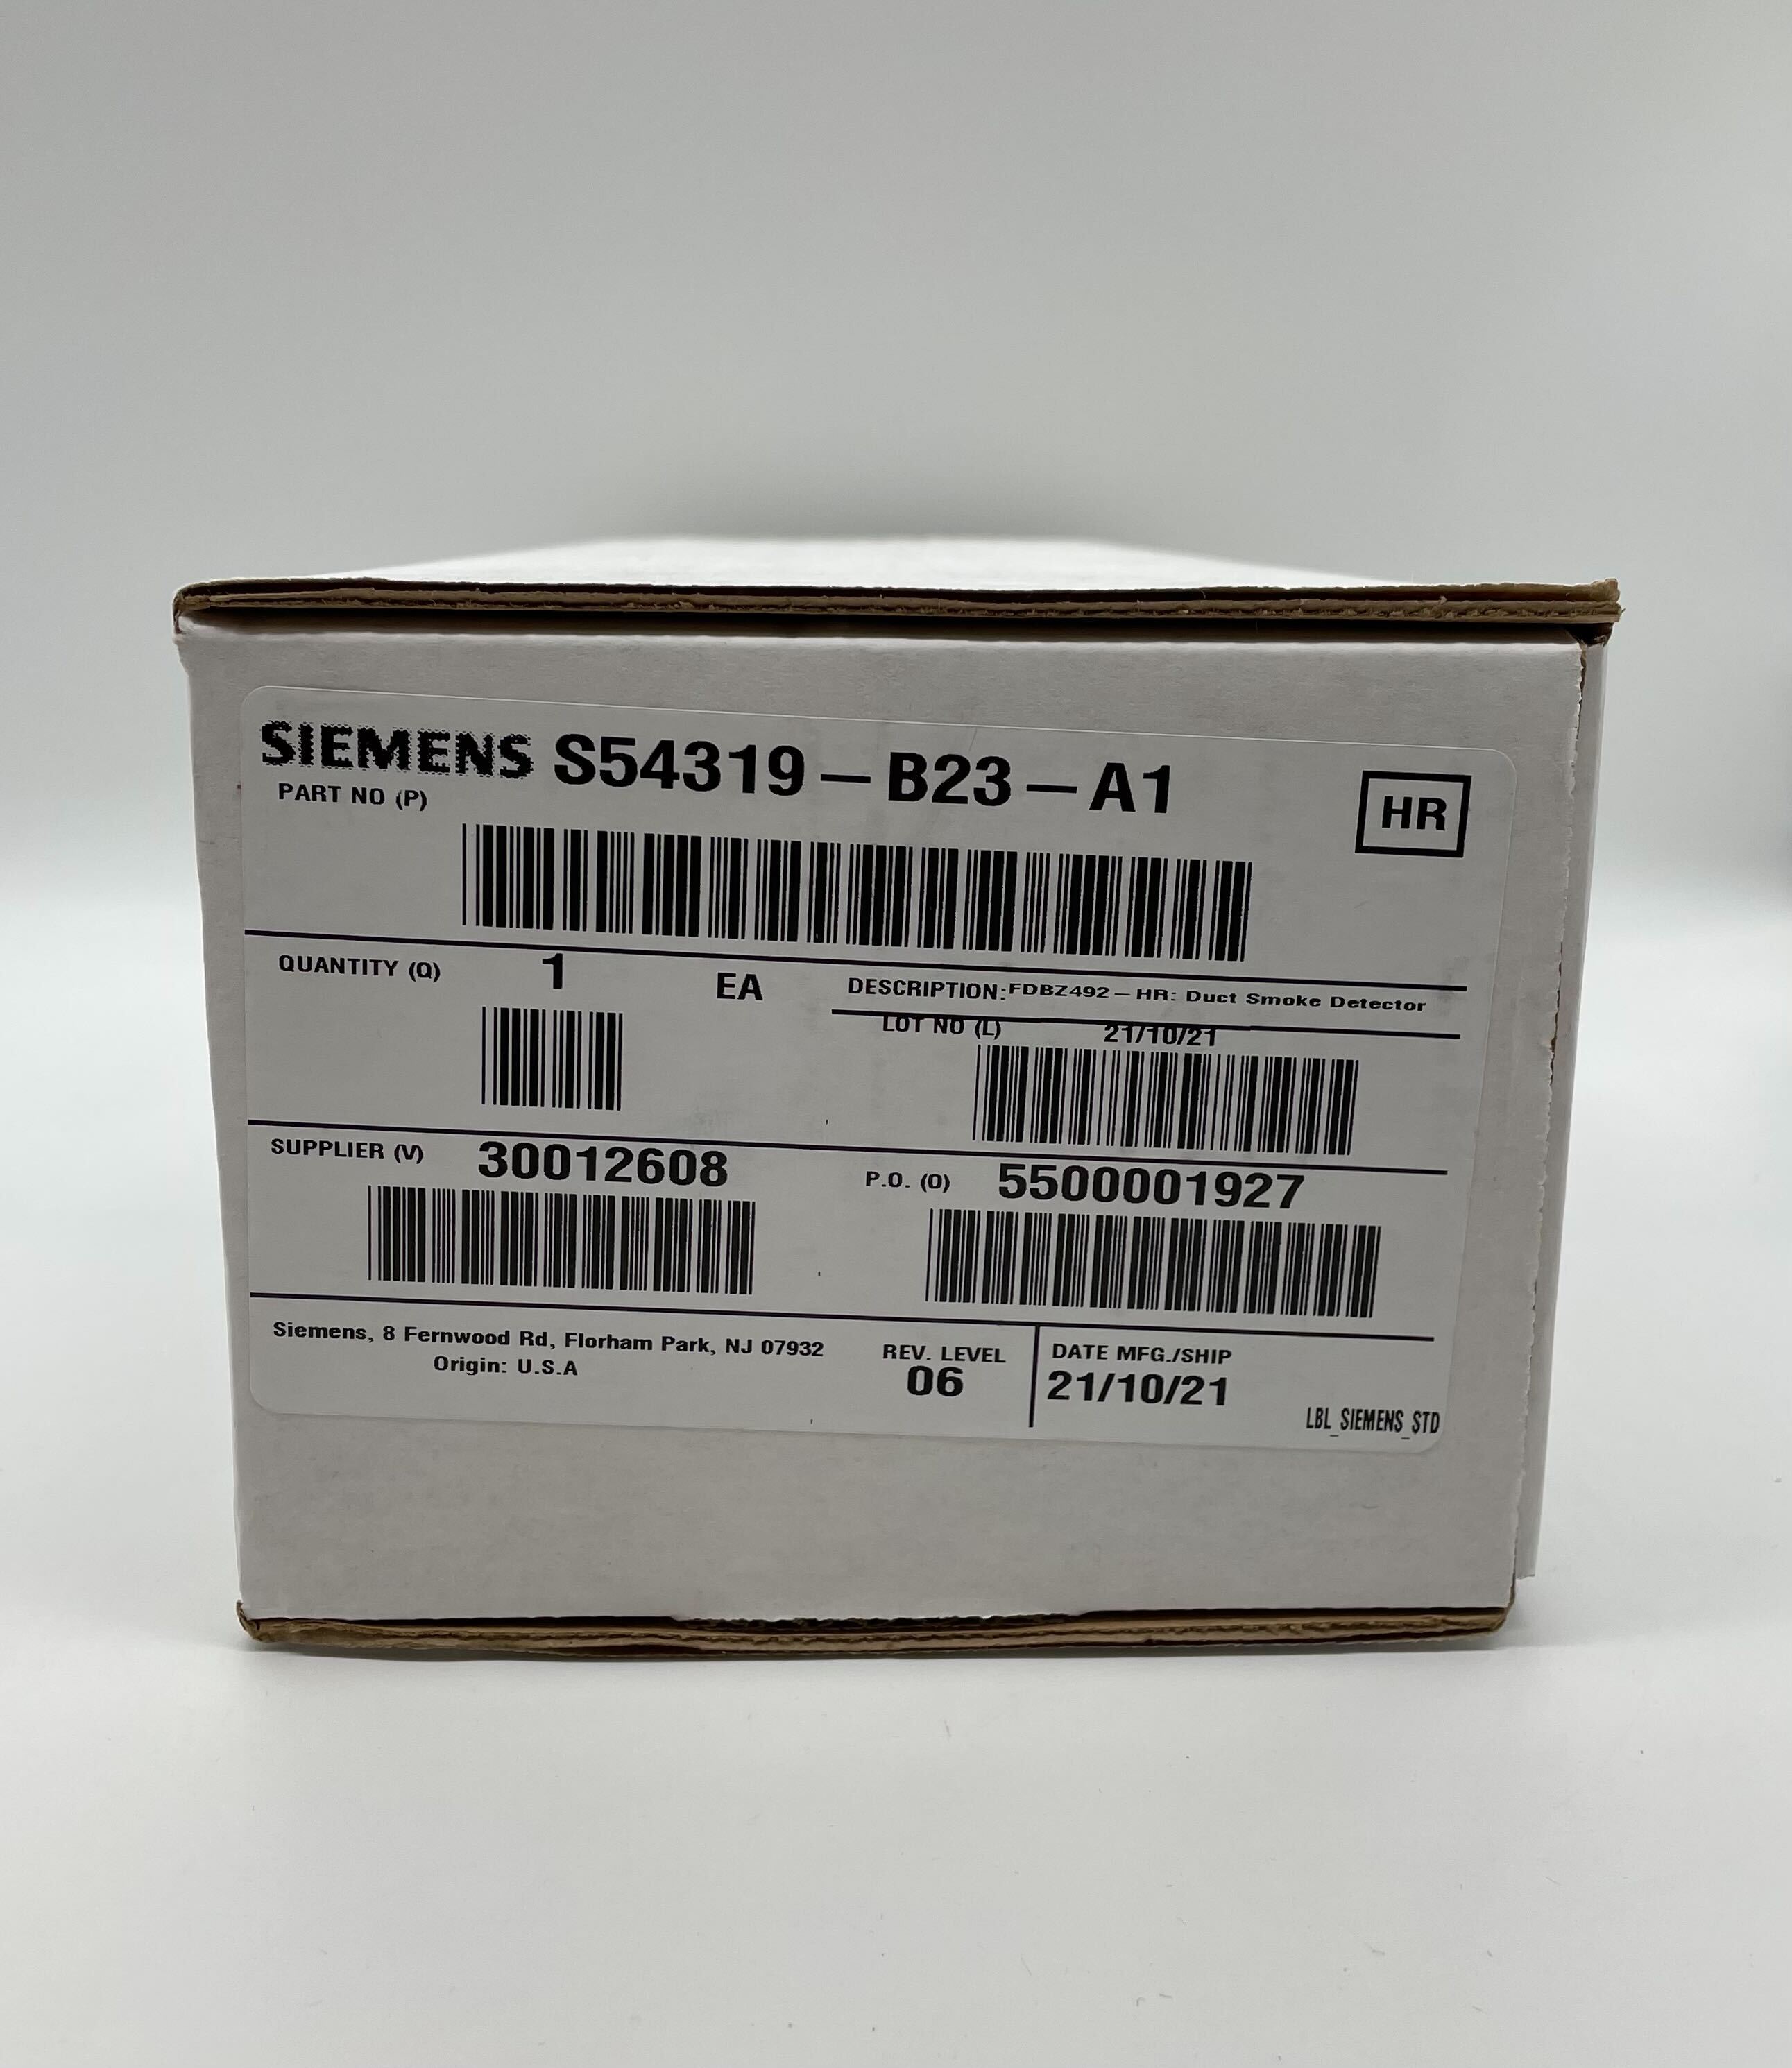 Siemens FDBZ492-HR